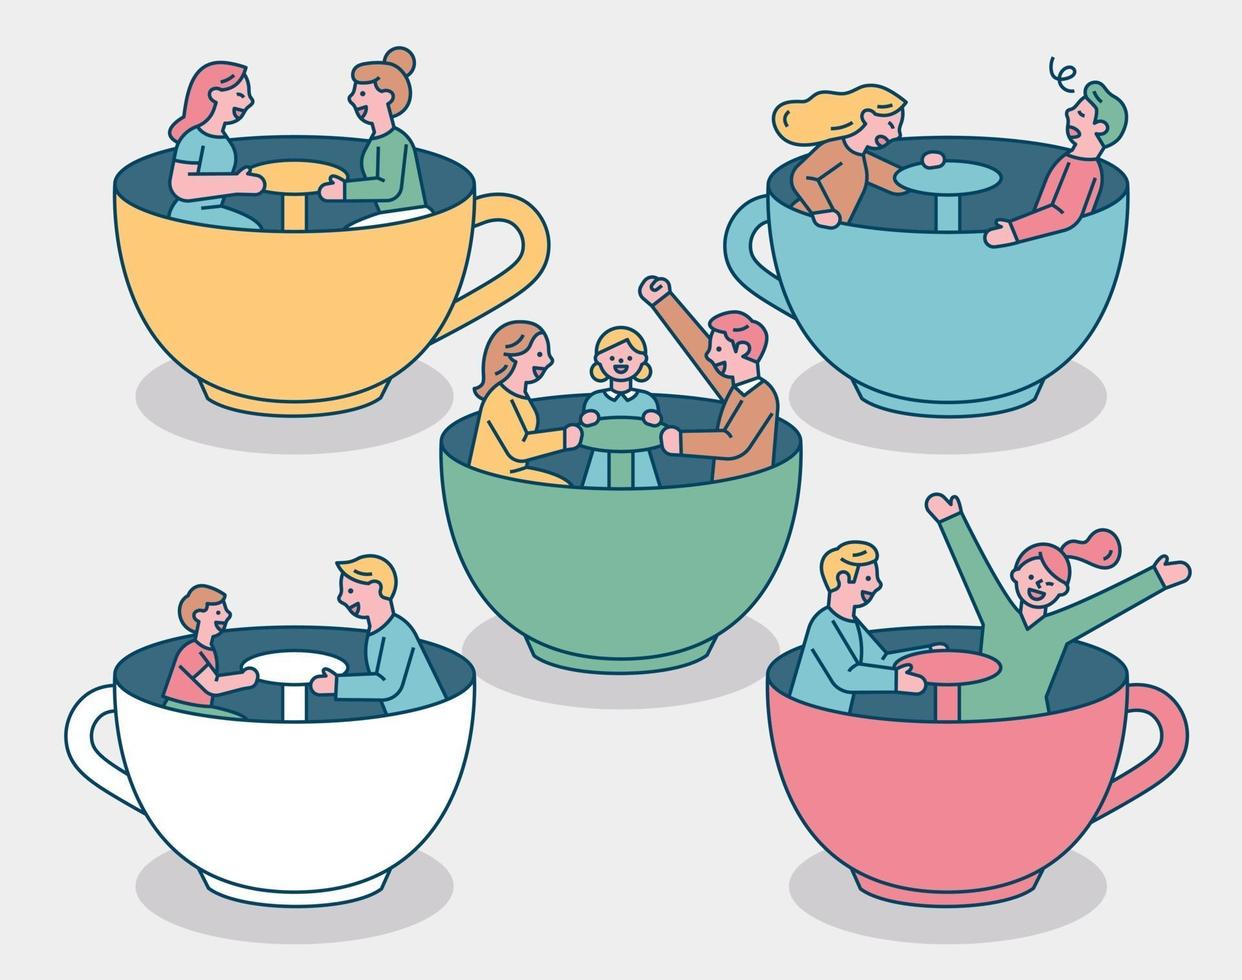 la gente está montando tazas de té en un parque de atracciones. la familia y la pareja se divierten sentados en tazas de té. vector